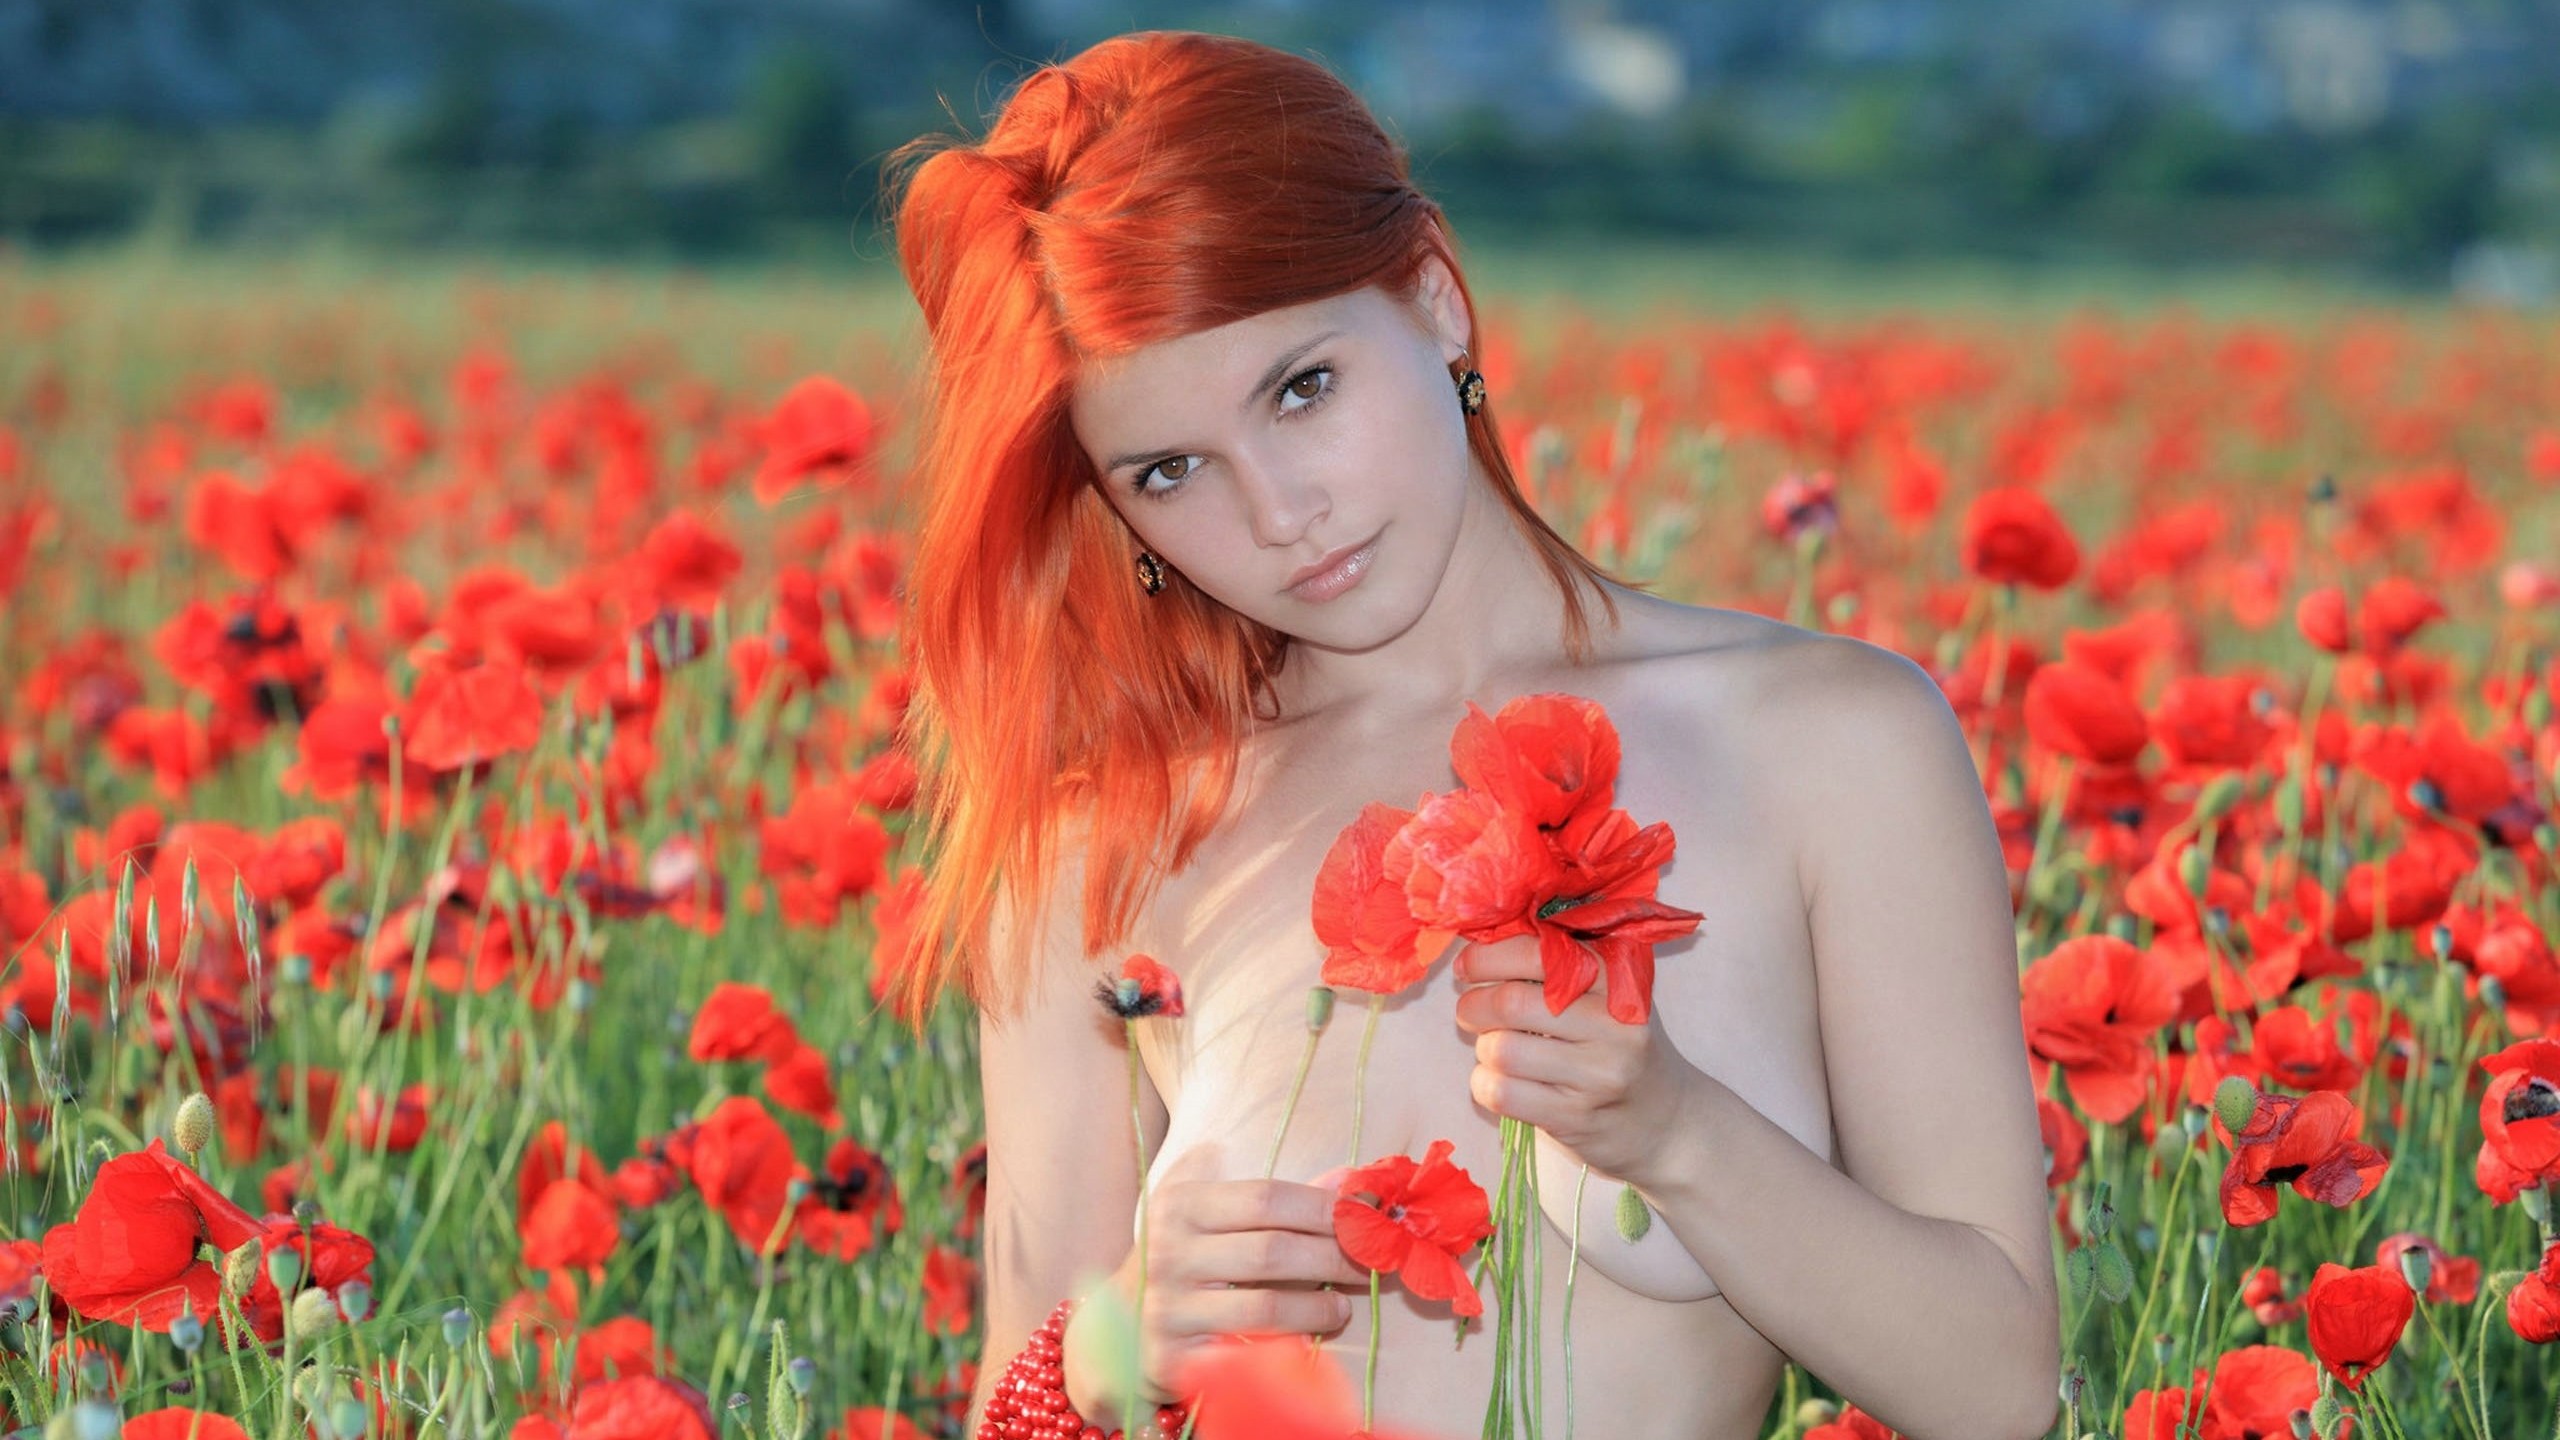 Огненно рыжая девушка с голенькими дойками